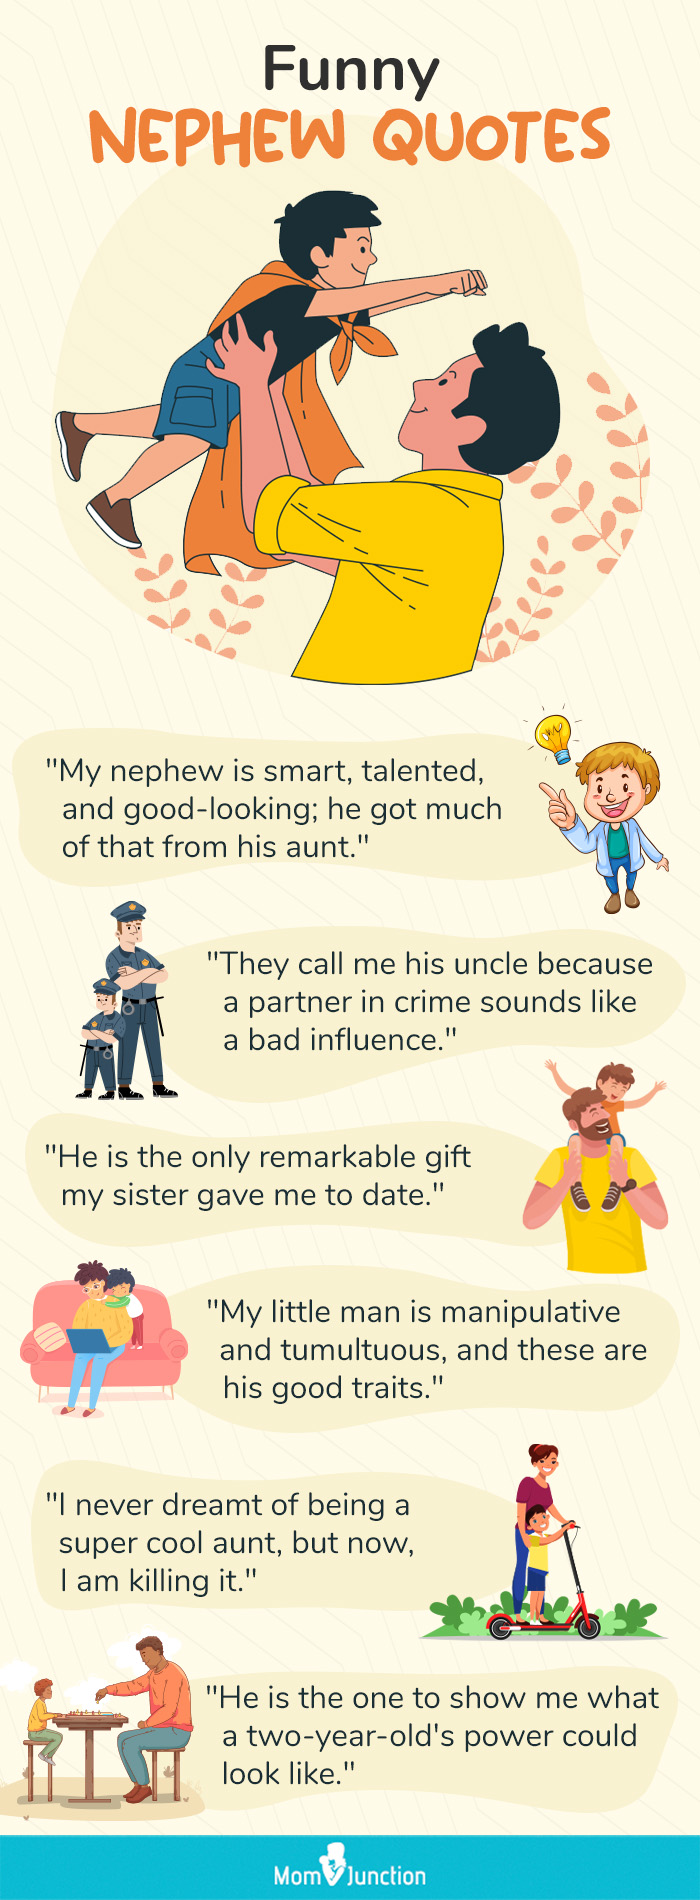 funny nephew quotes (infographic)